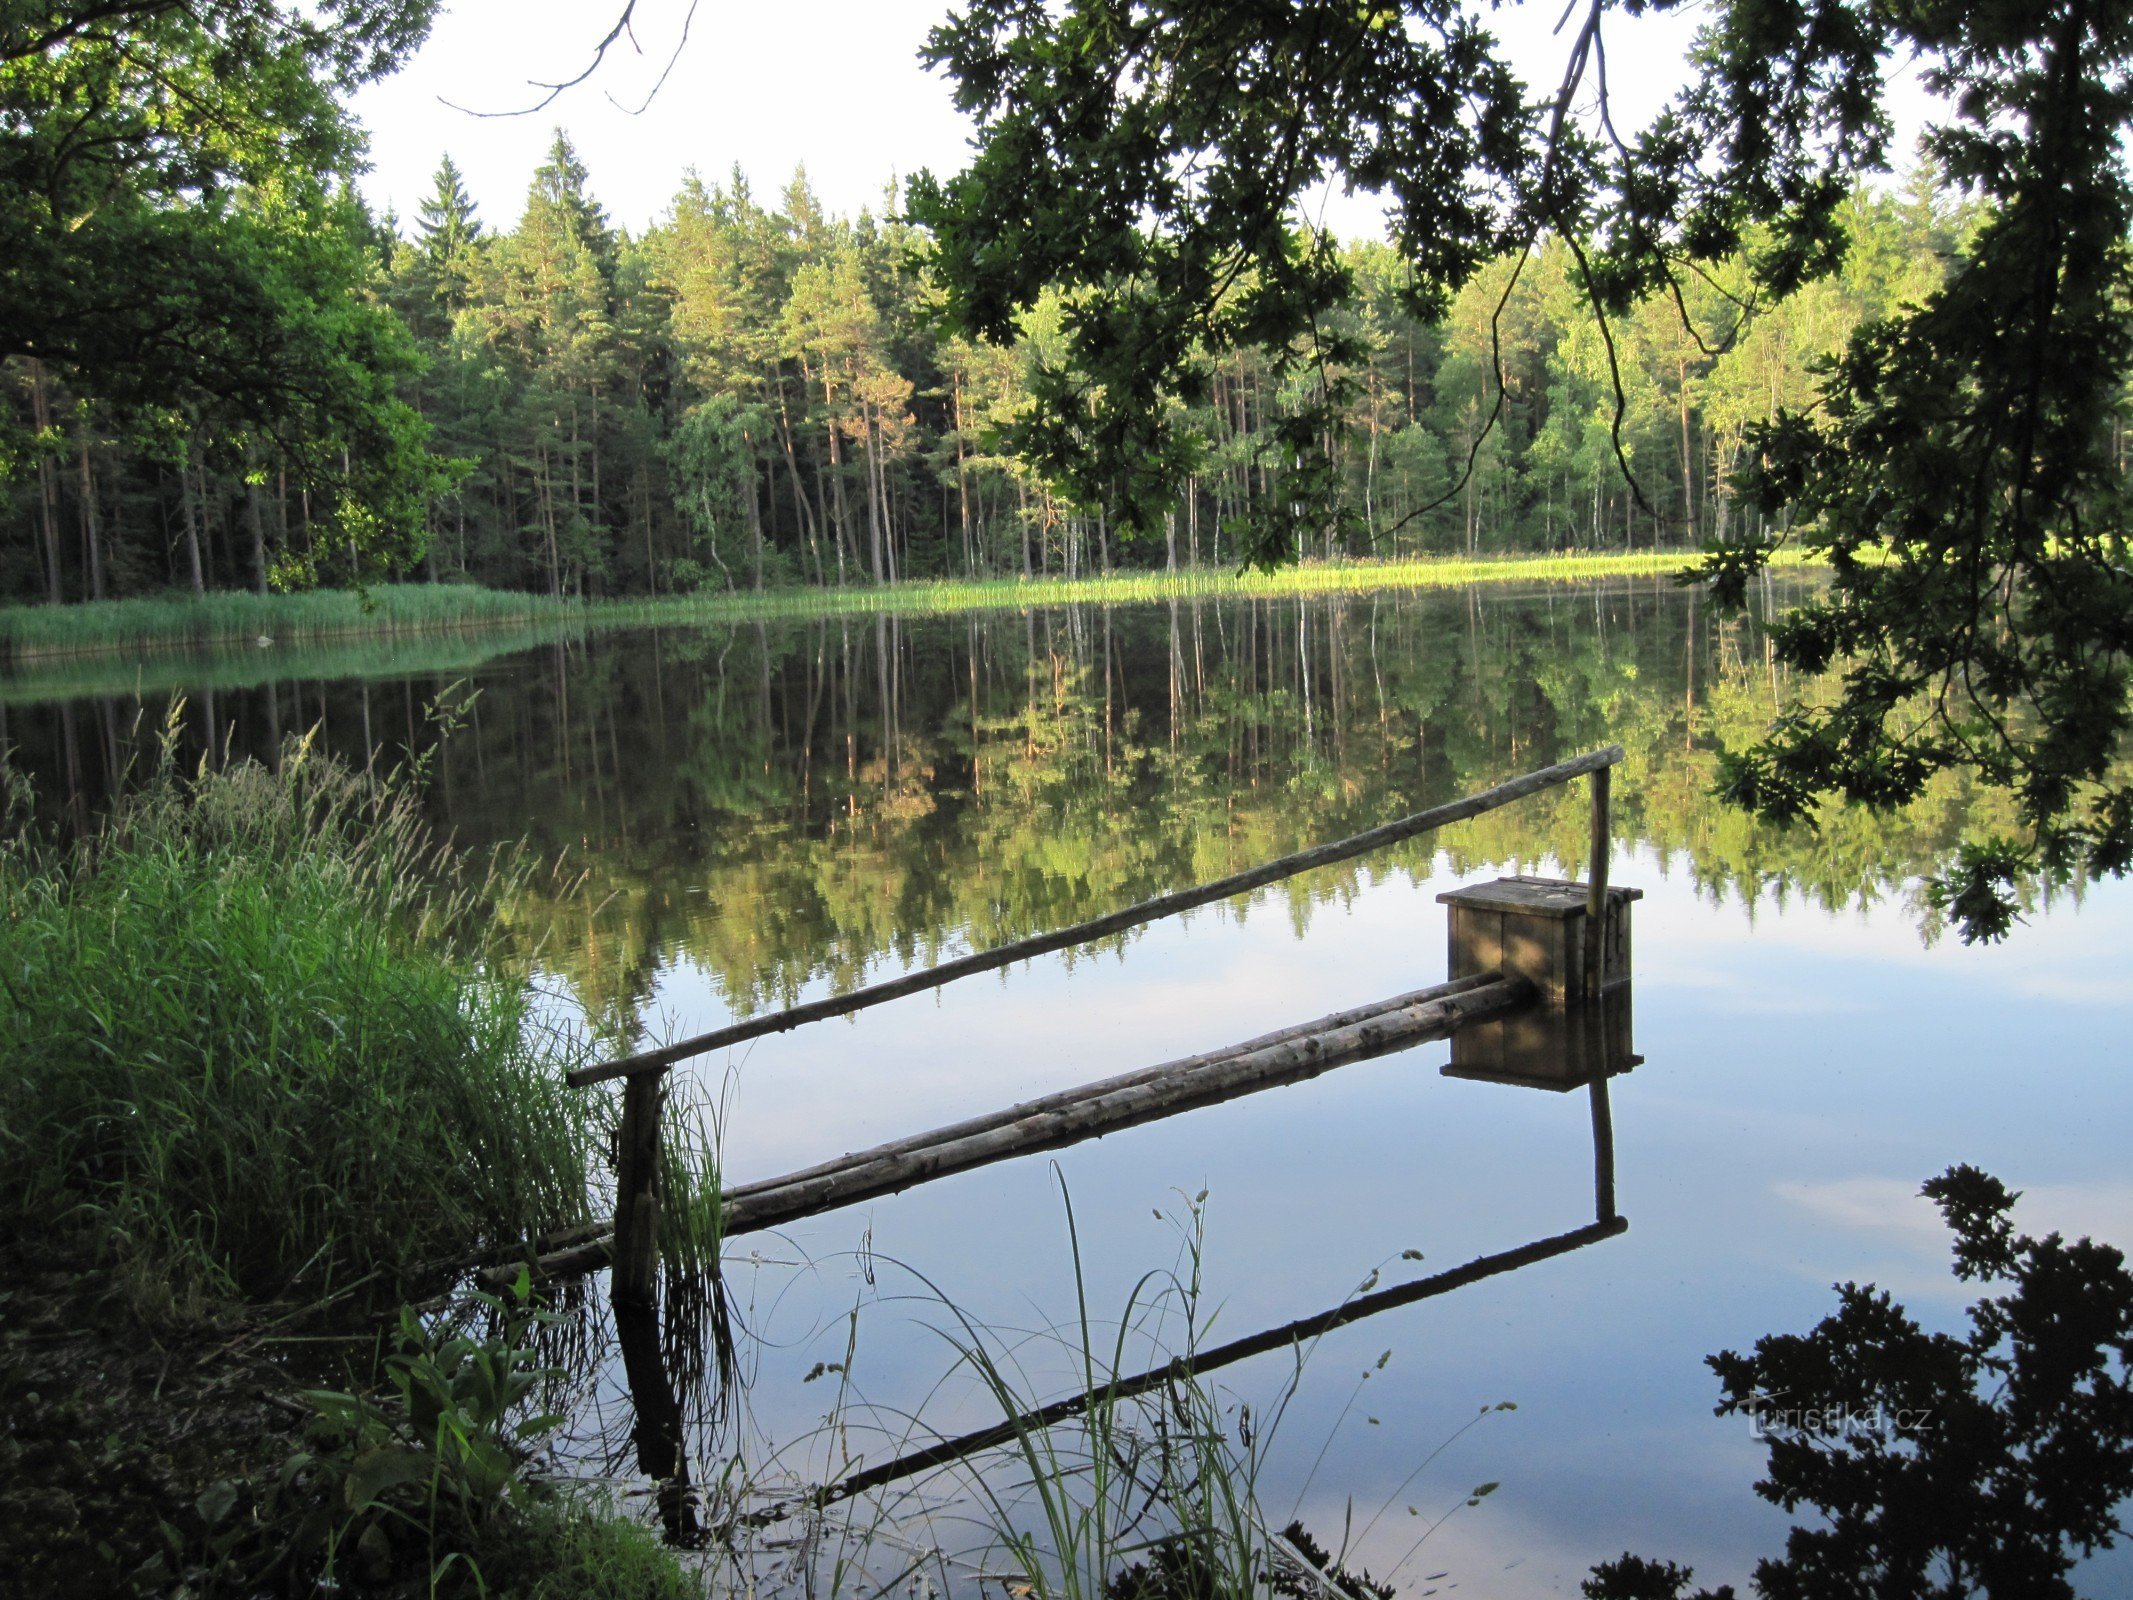 Veverský rybník 在 Nové Hradů 附近